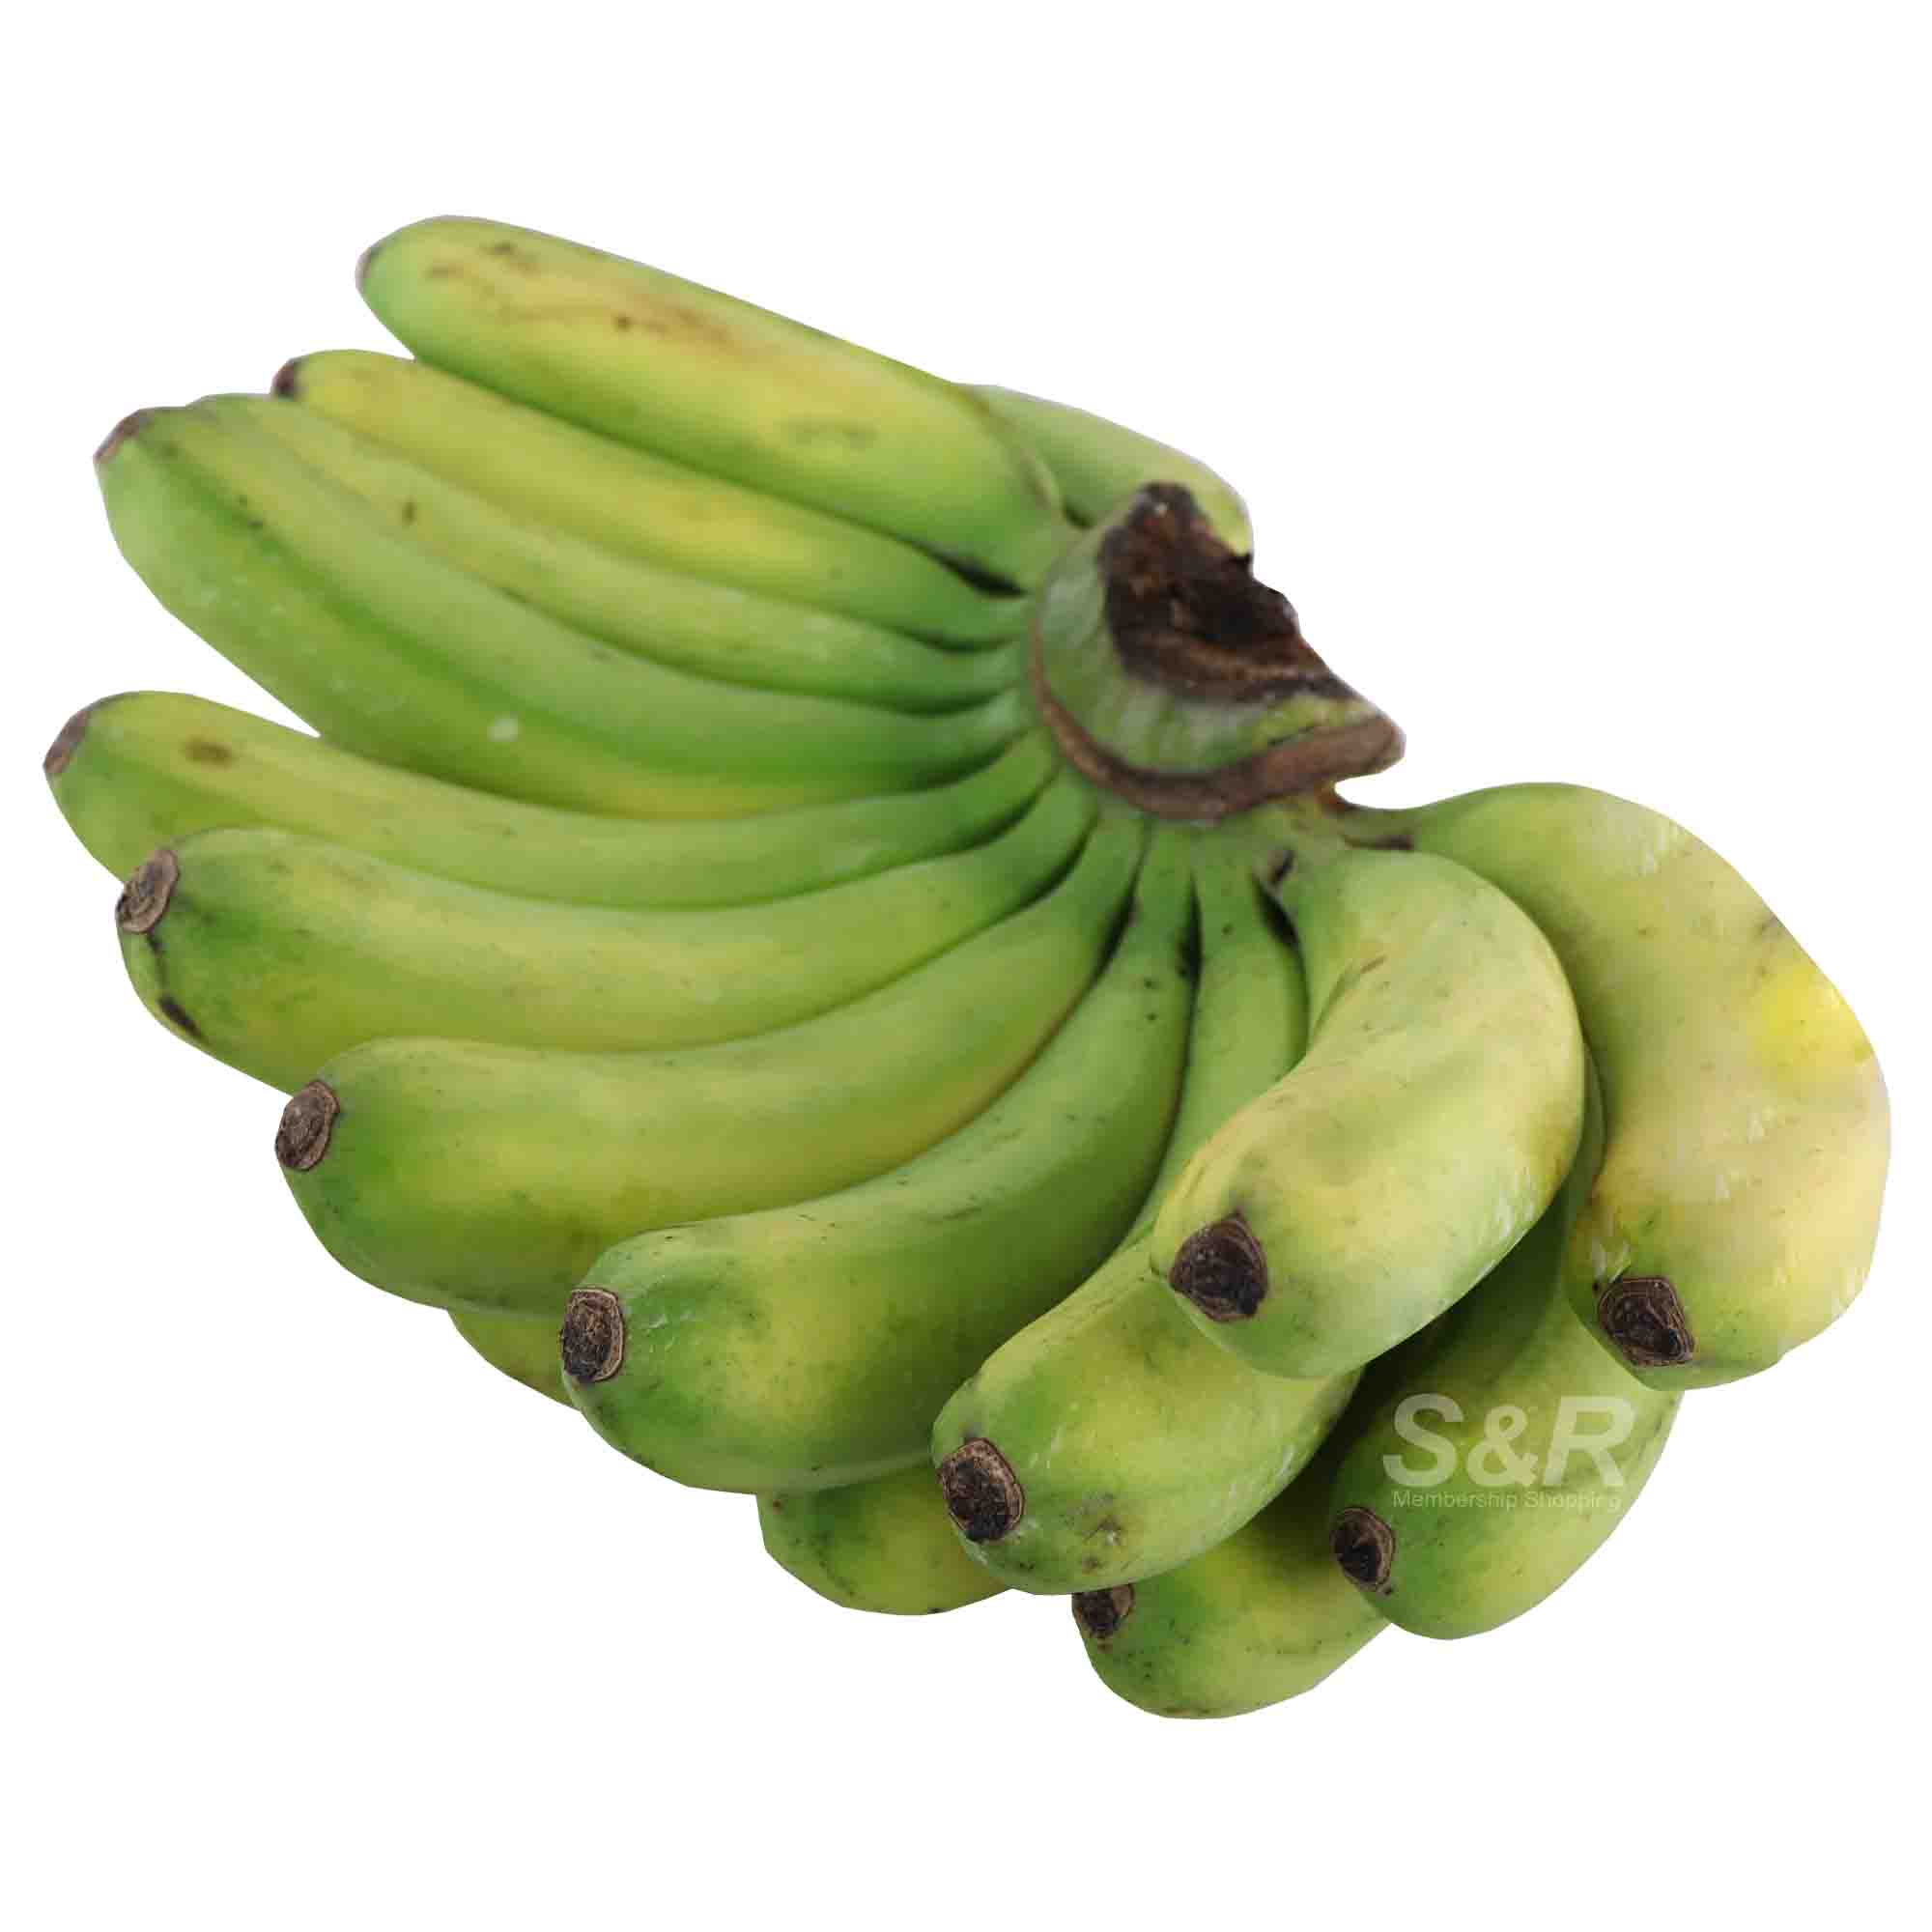 S&R Lacatan Banana approx. 3.3kg